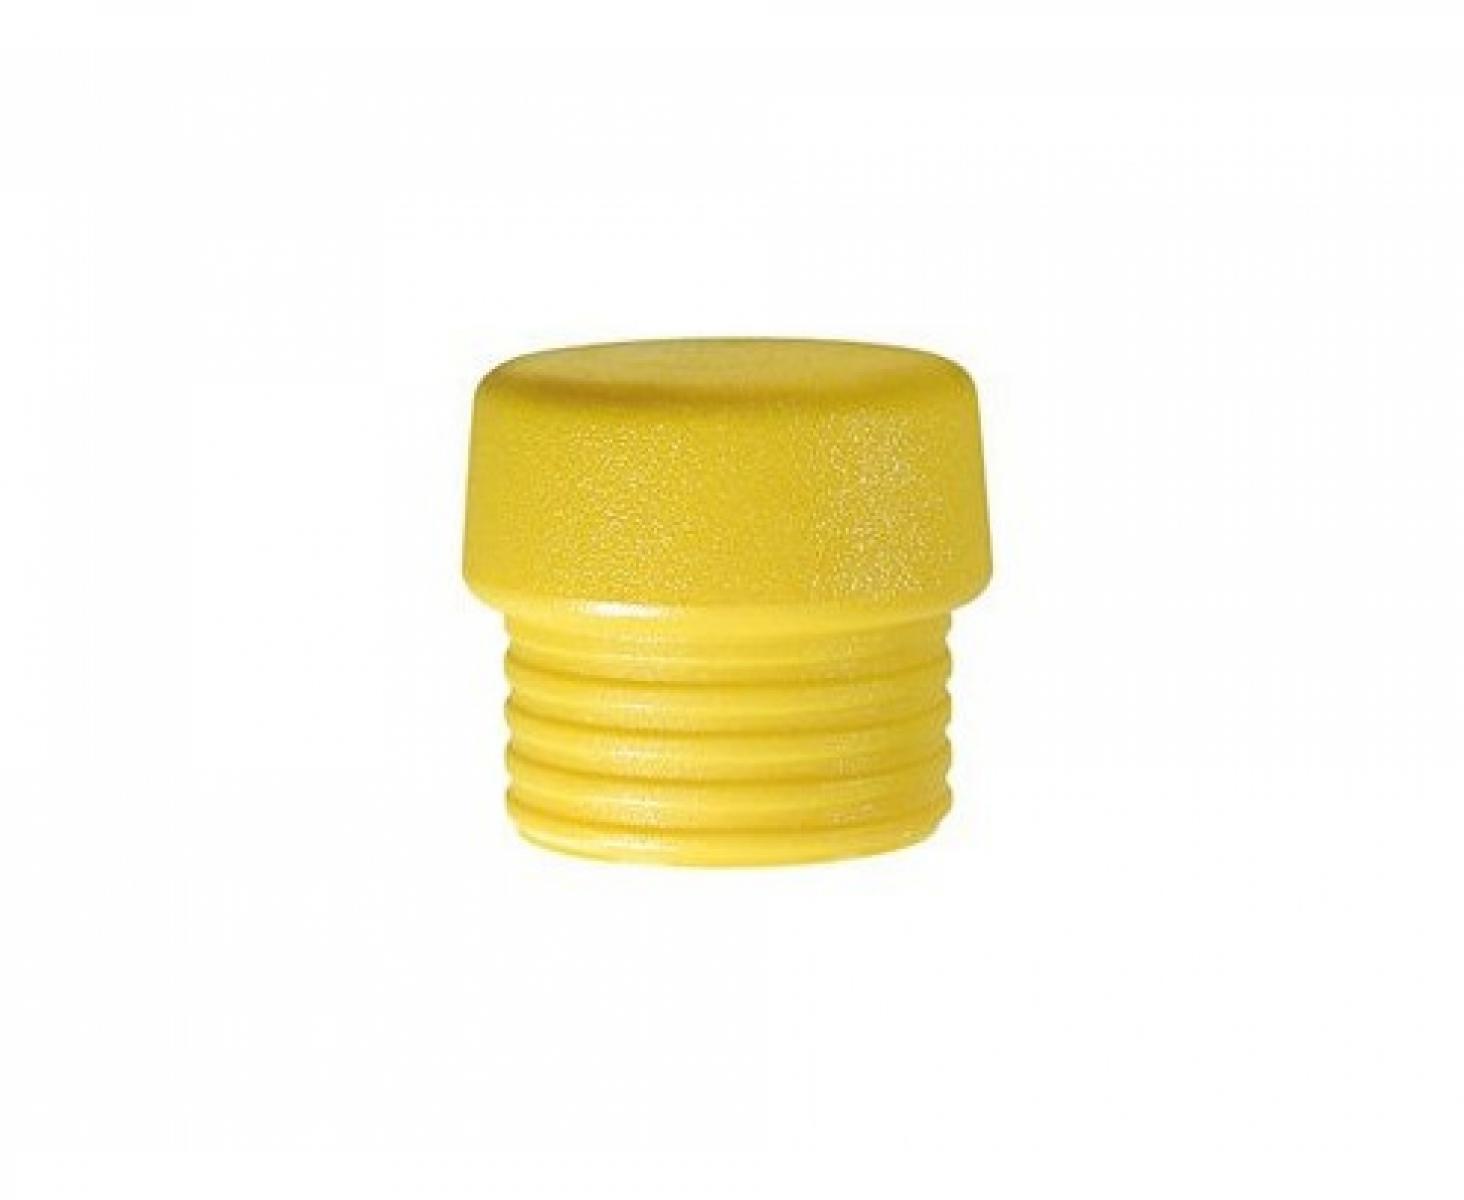 Головка желтая для молотка Wiha Safety 831-5 26428 из среднетвердого полиуретана